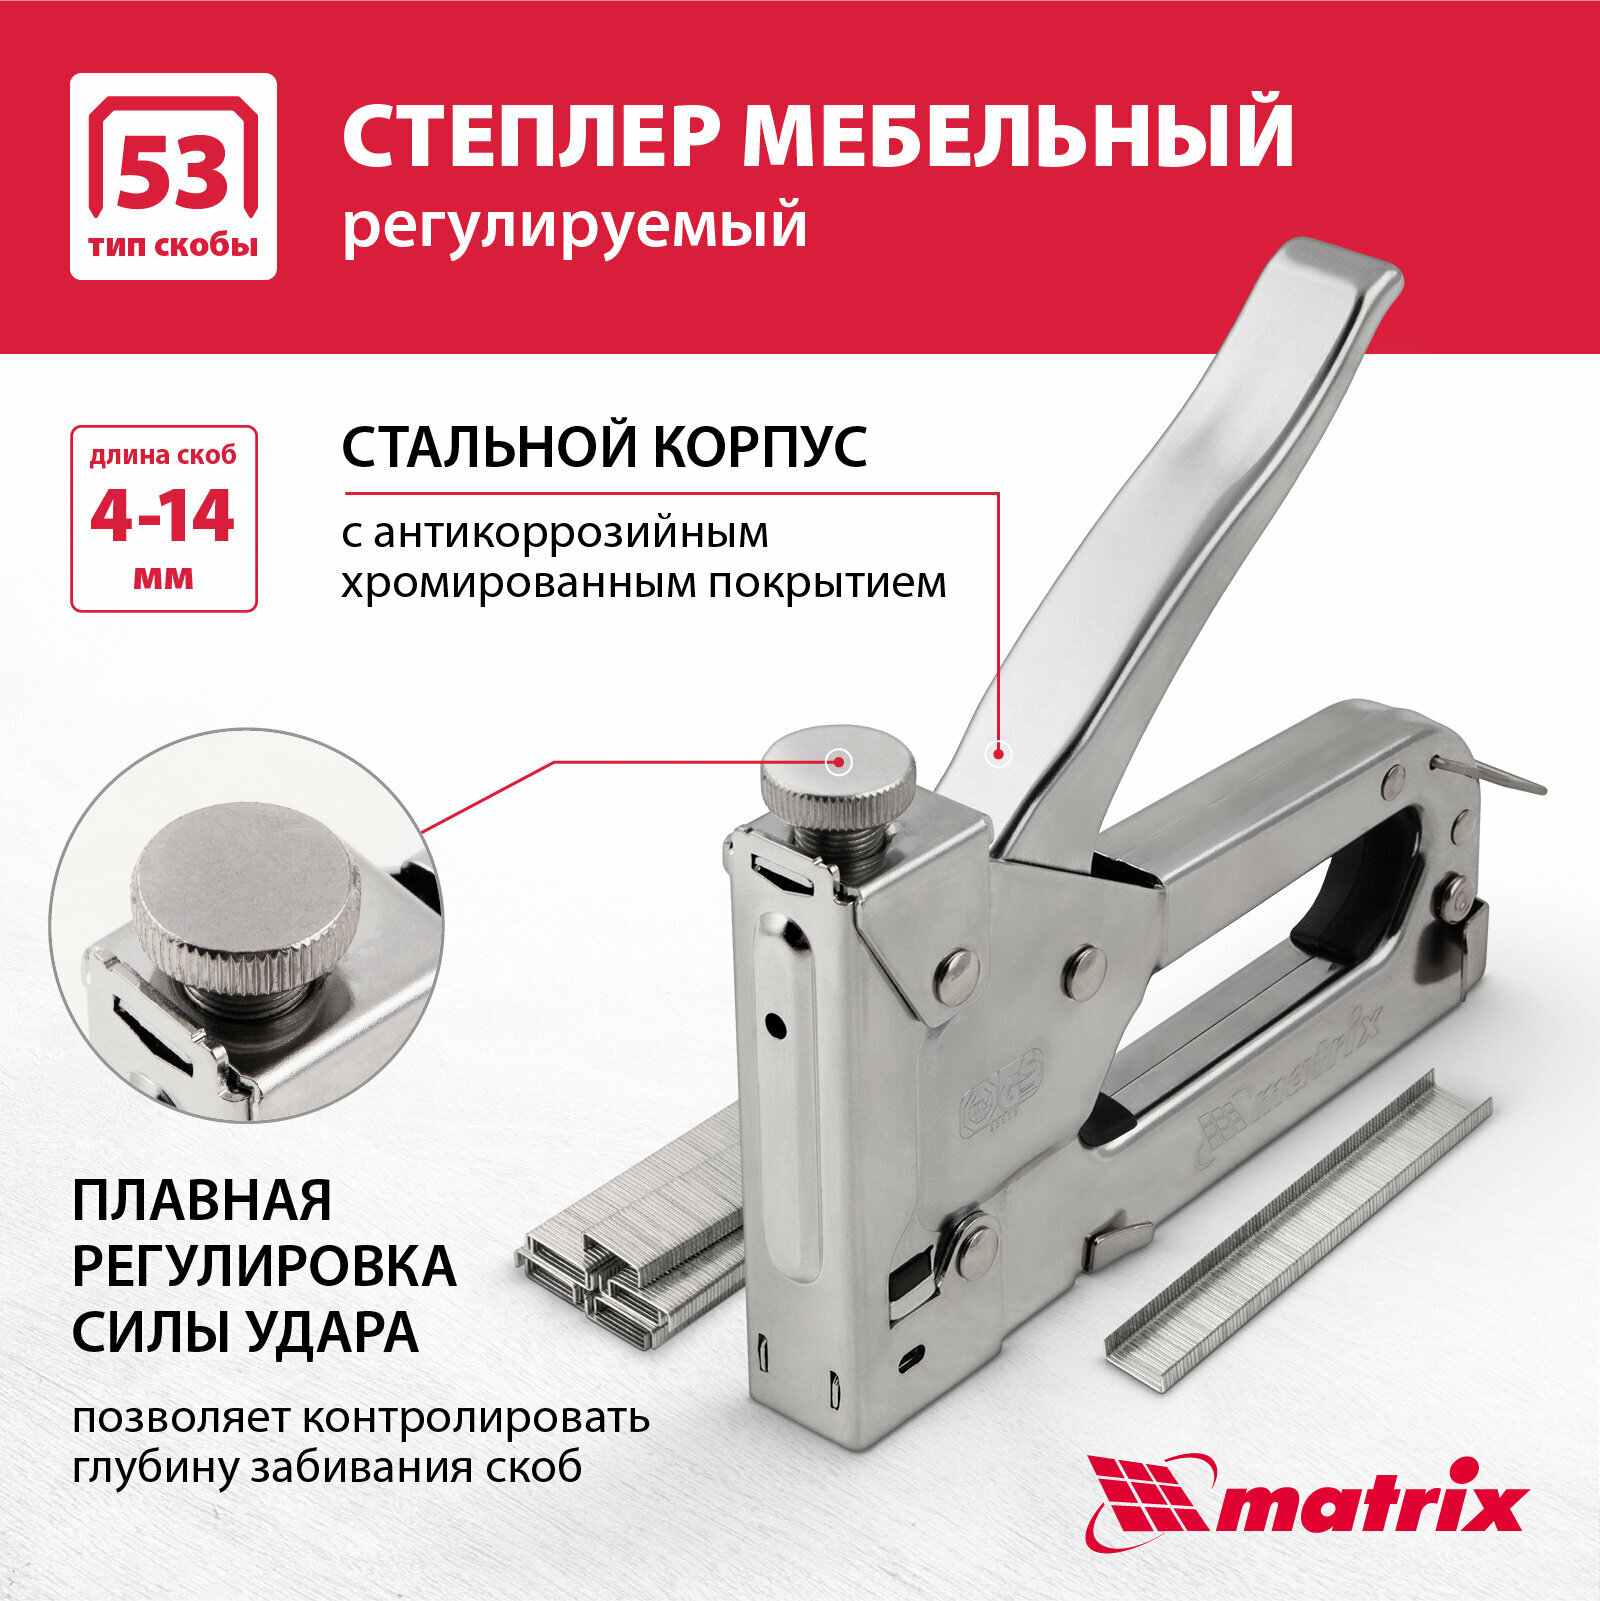 Мебельный регулируемый степлер MATRIX MASTER 40902